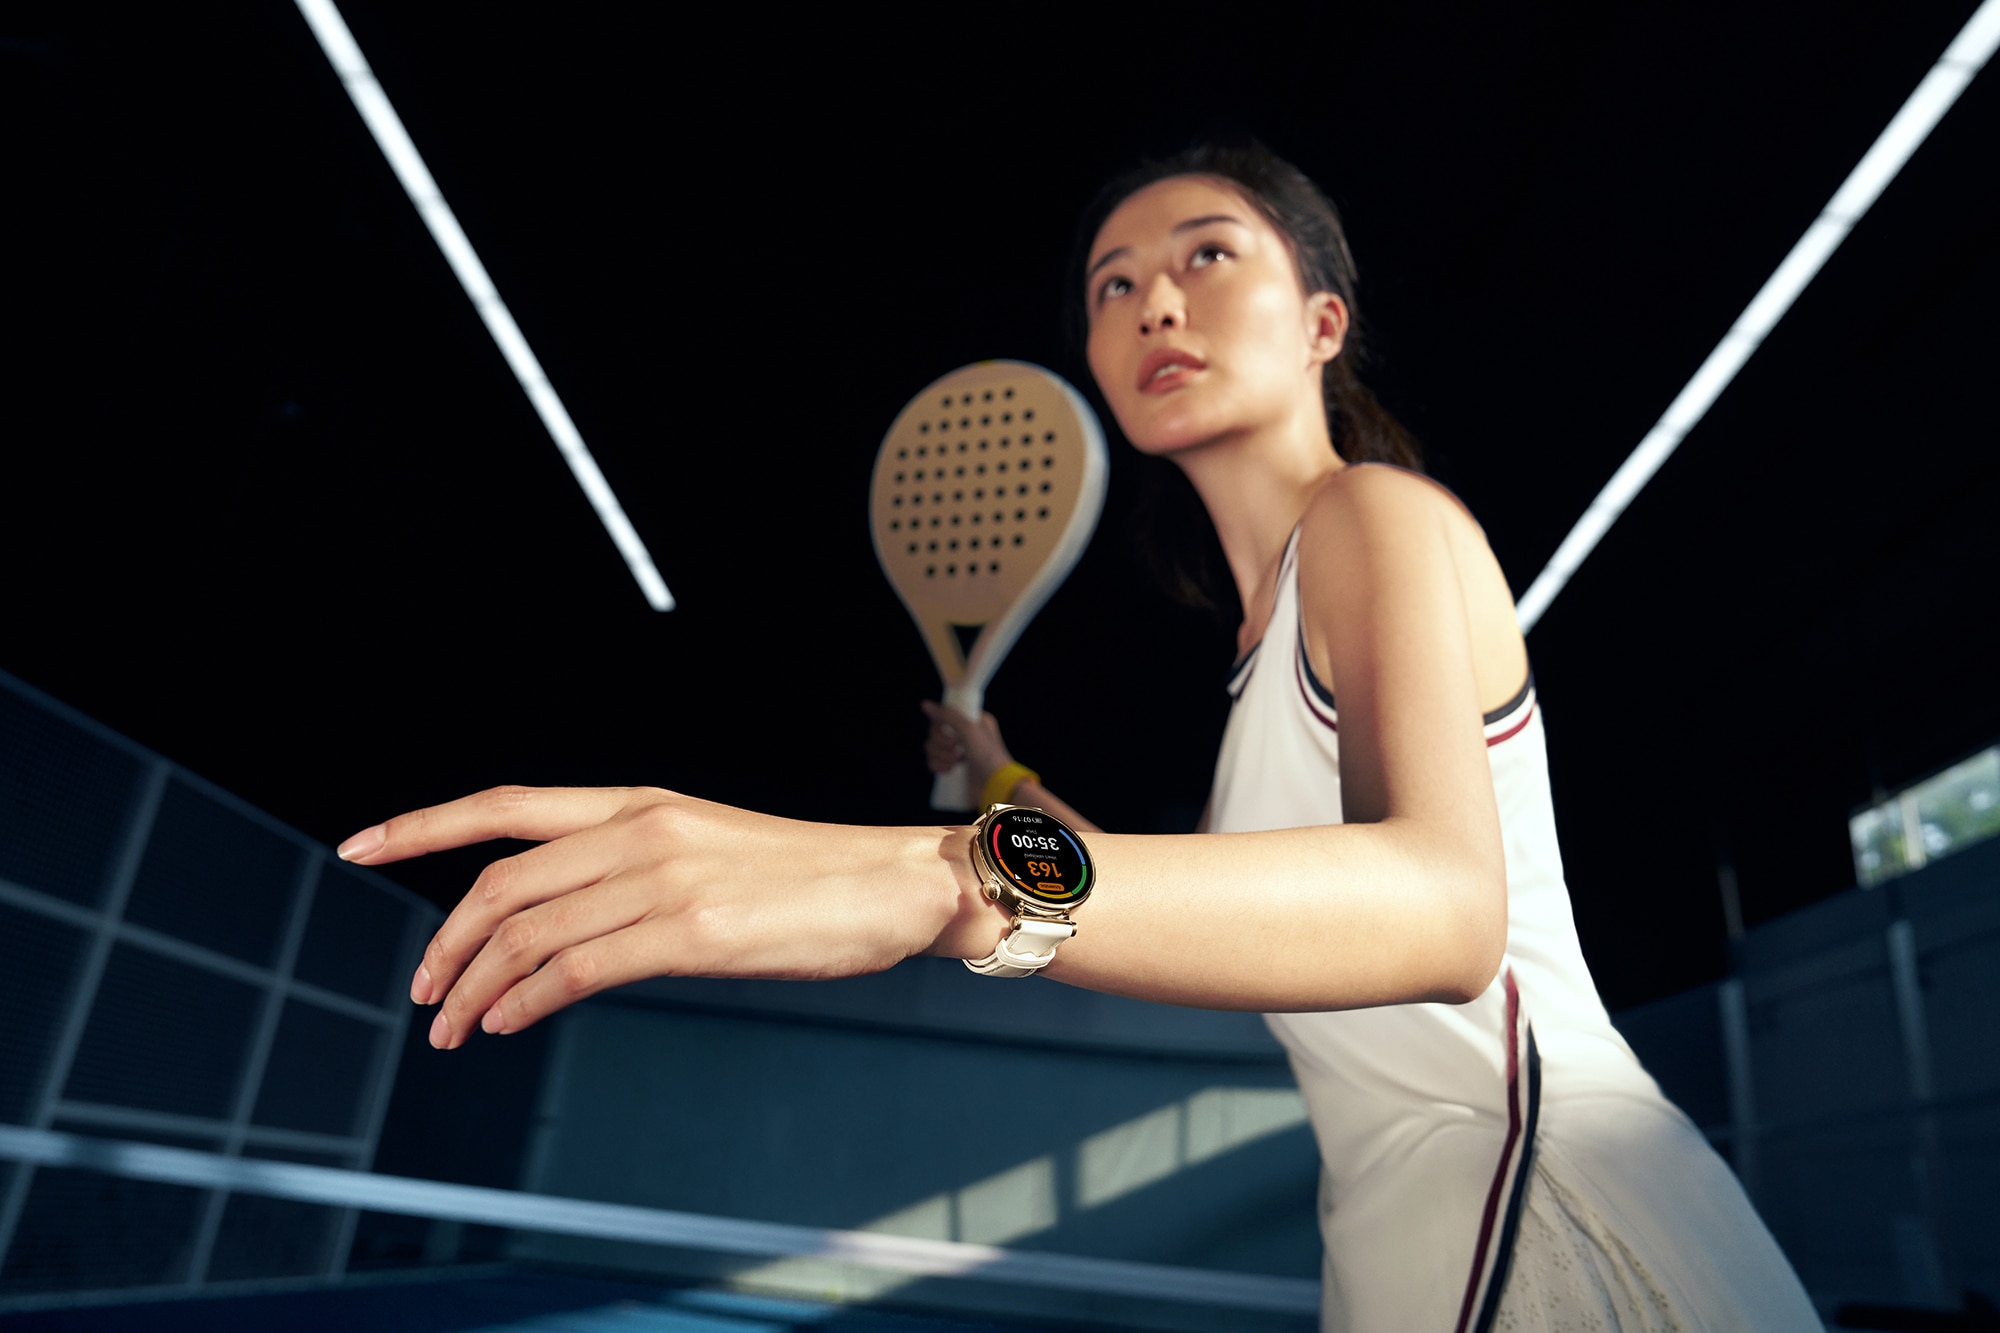 Watch GT 4 nâng cấp cảm biến và một số tính năng liên quan đến theo dõi sức khoẻ, vận động của người đeo